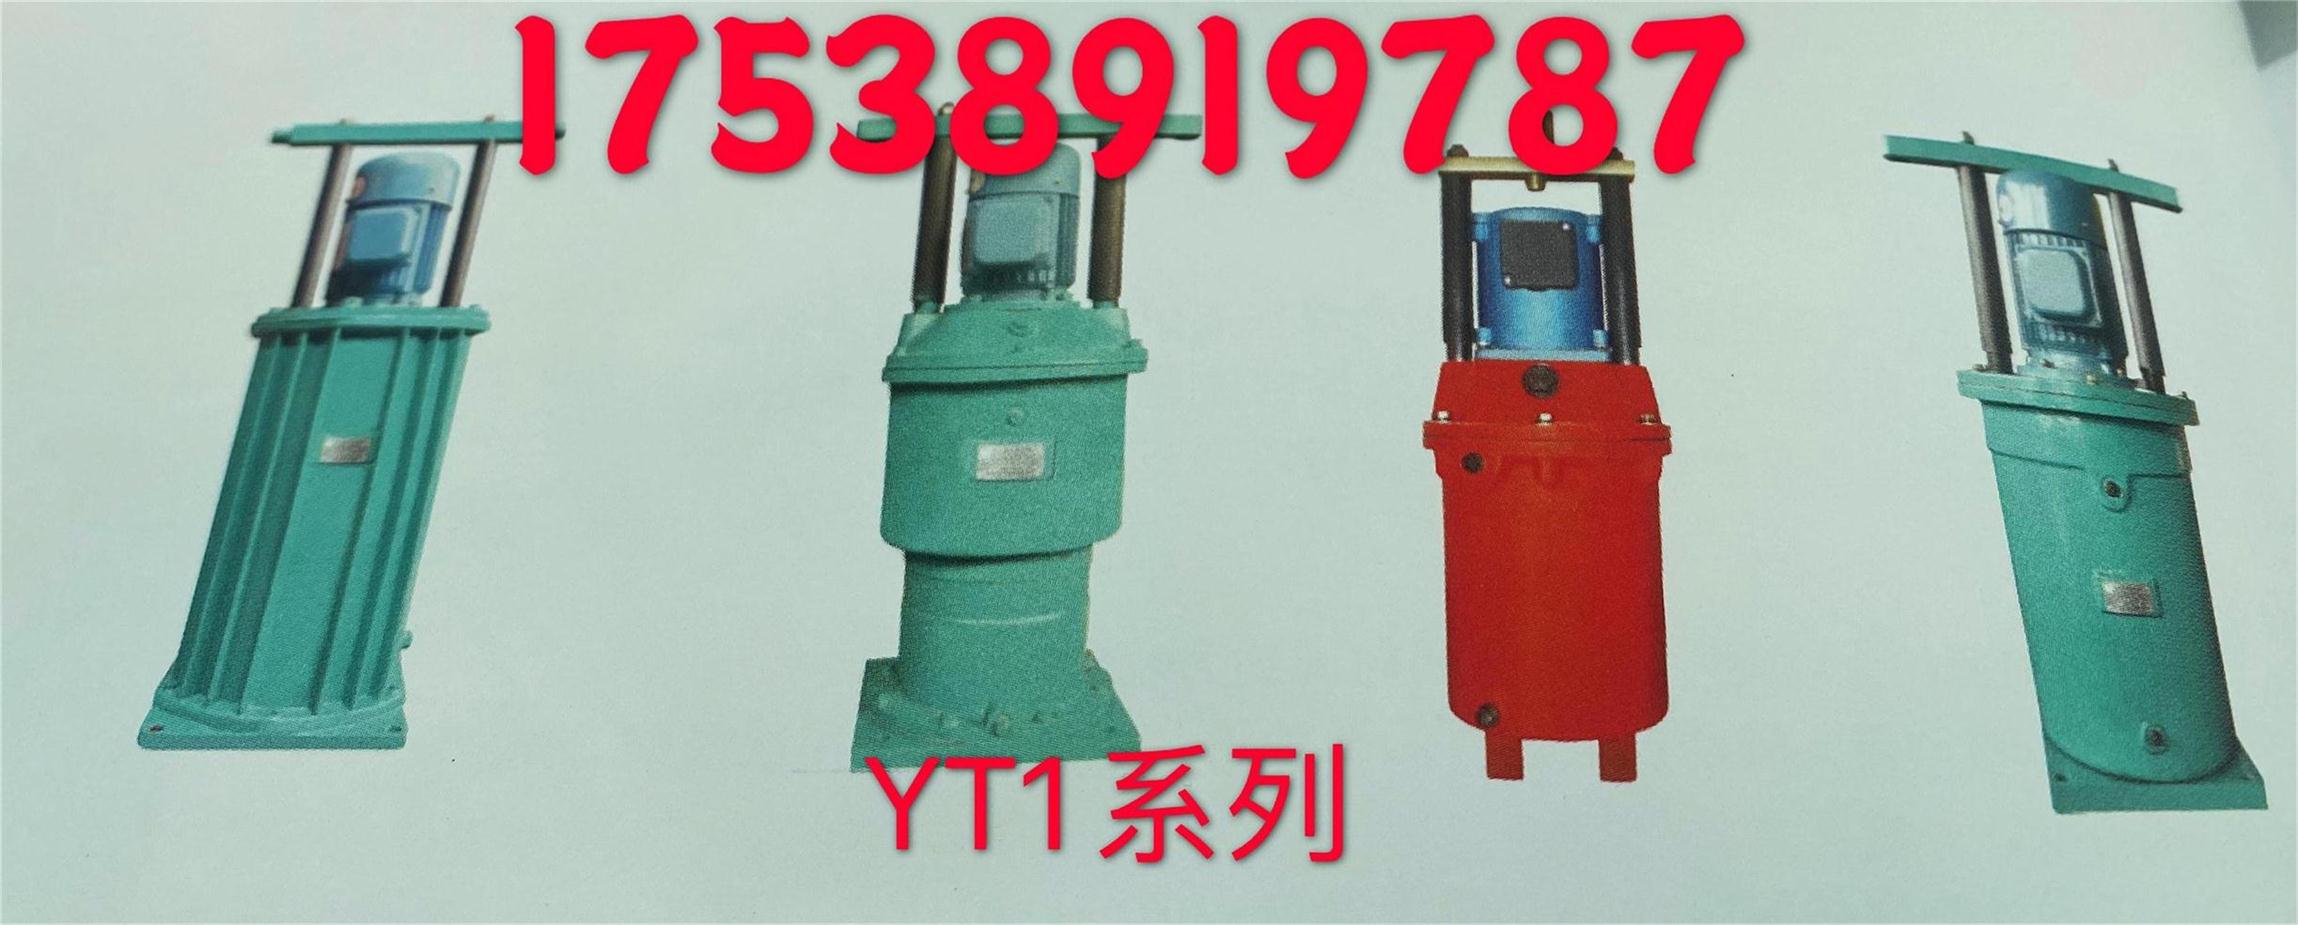 YT1系列电力液压推动器图片